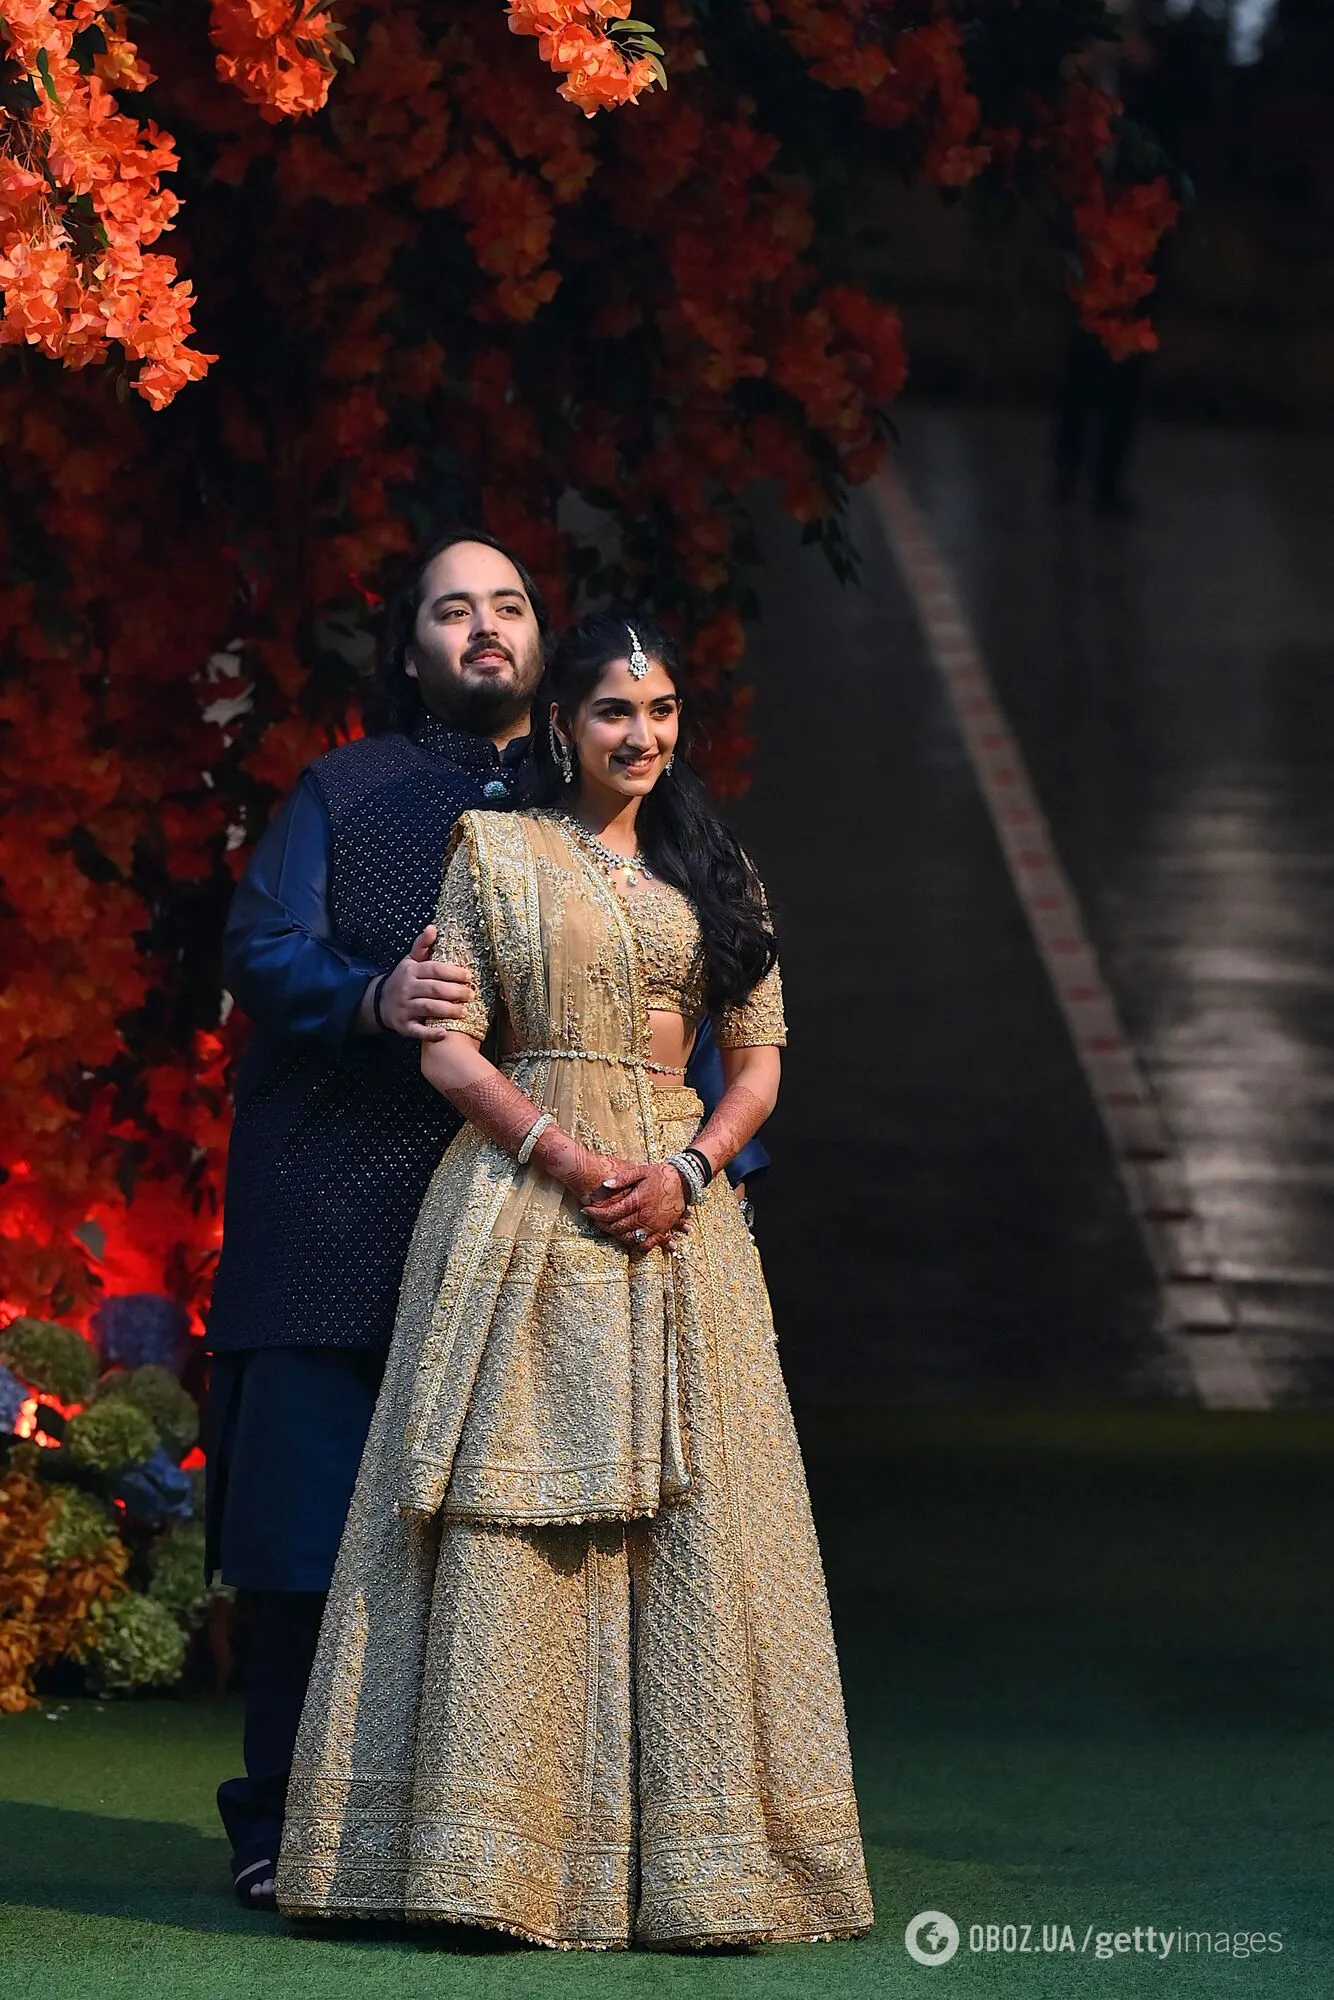 Син найбагатшої людини Індії, статки якого оцінюють у 118 мільярдів доларів, одружується. Чого чекати від "весілля року"